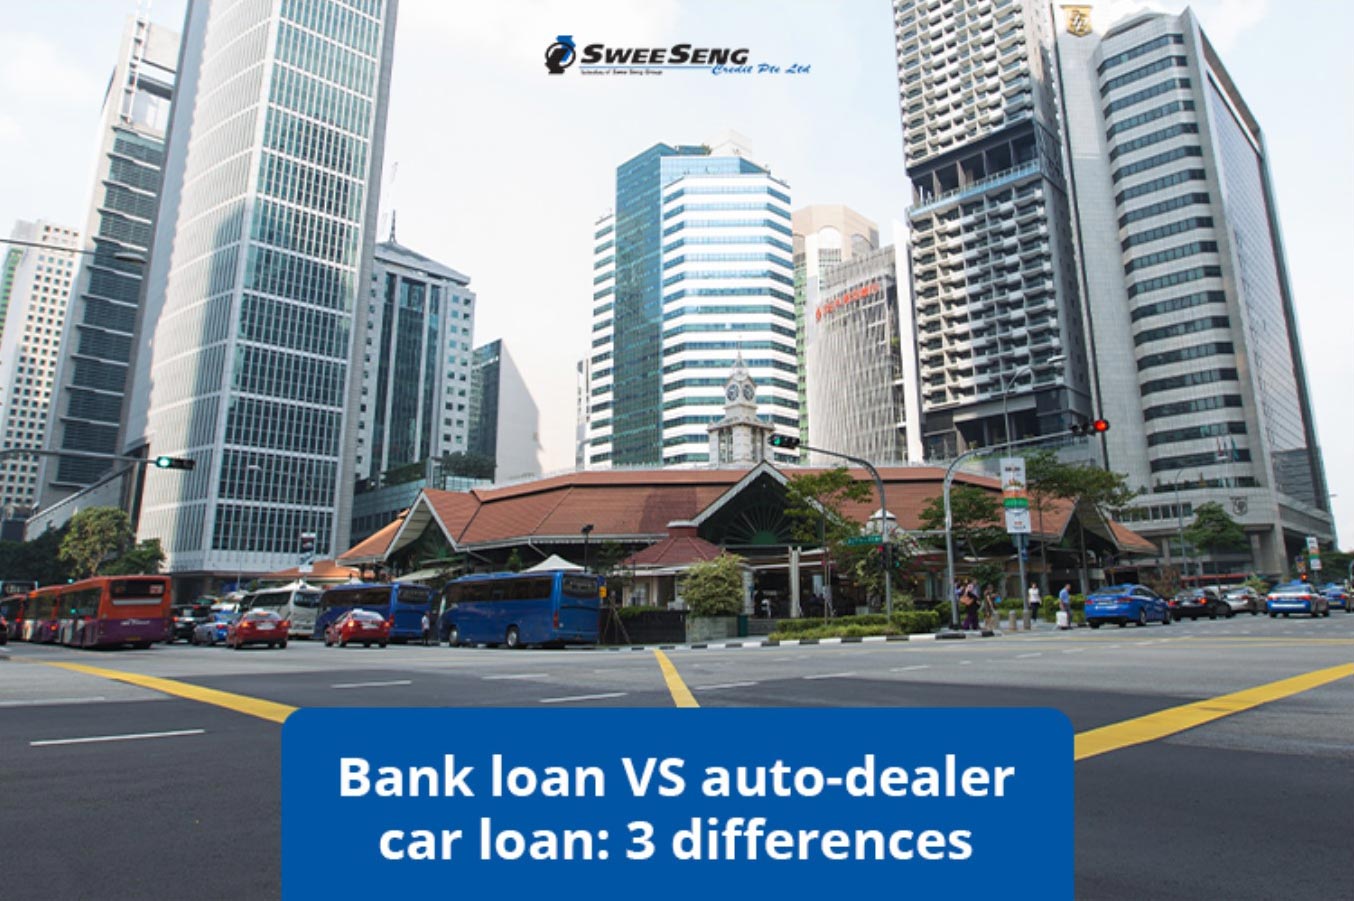 Bank Loan Vs Auto-Dealer Car Loan